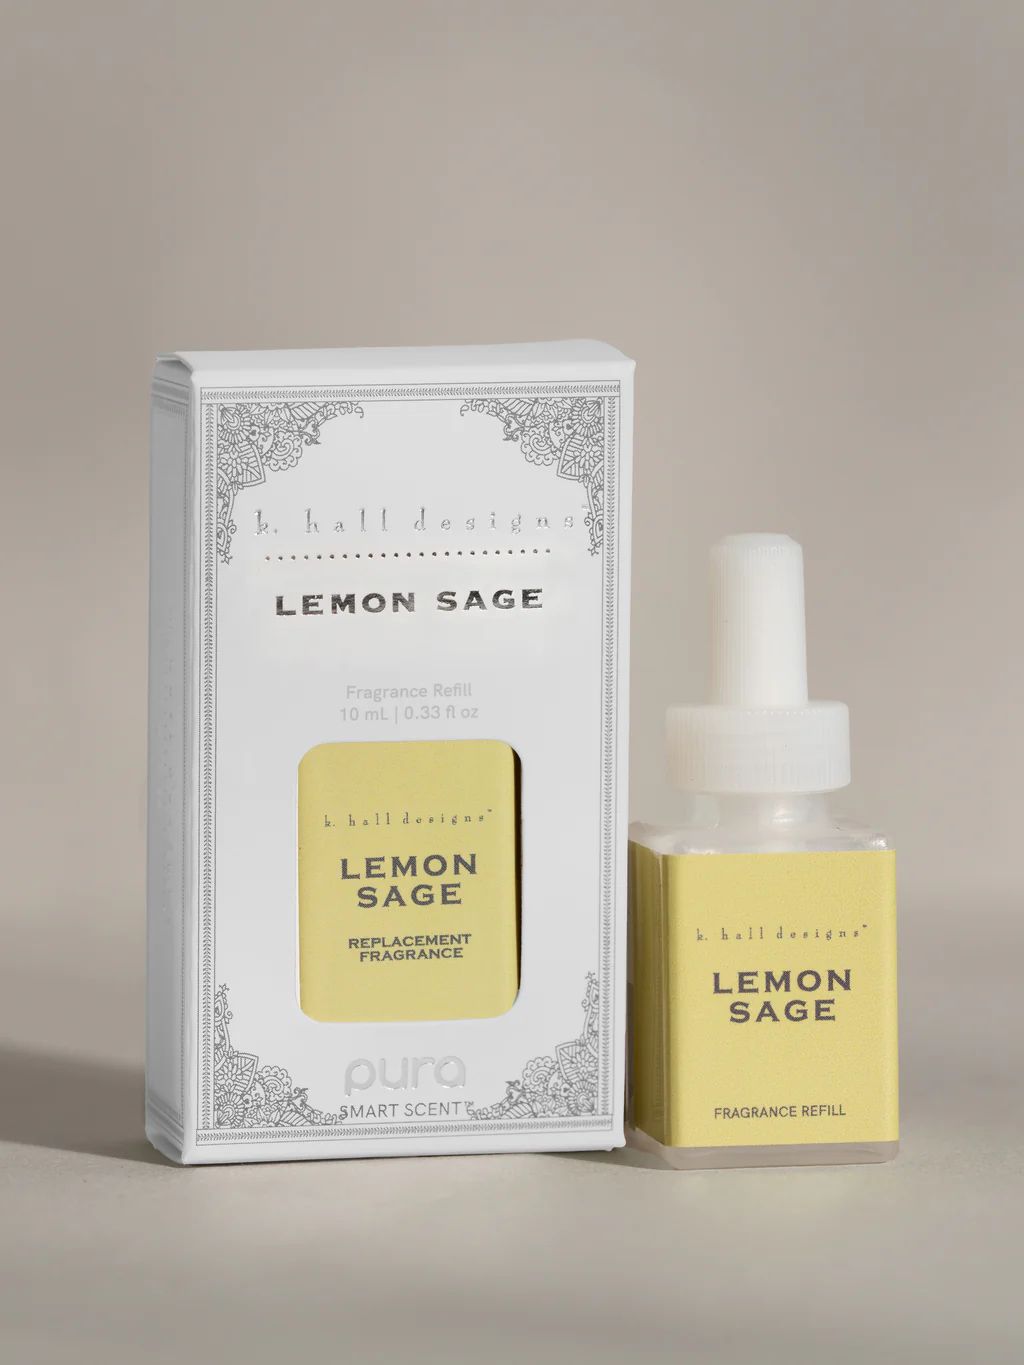 Lemon Sage | Pura